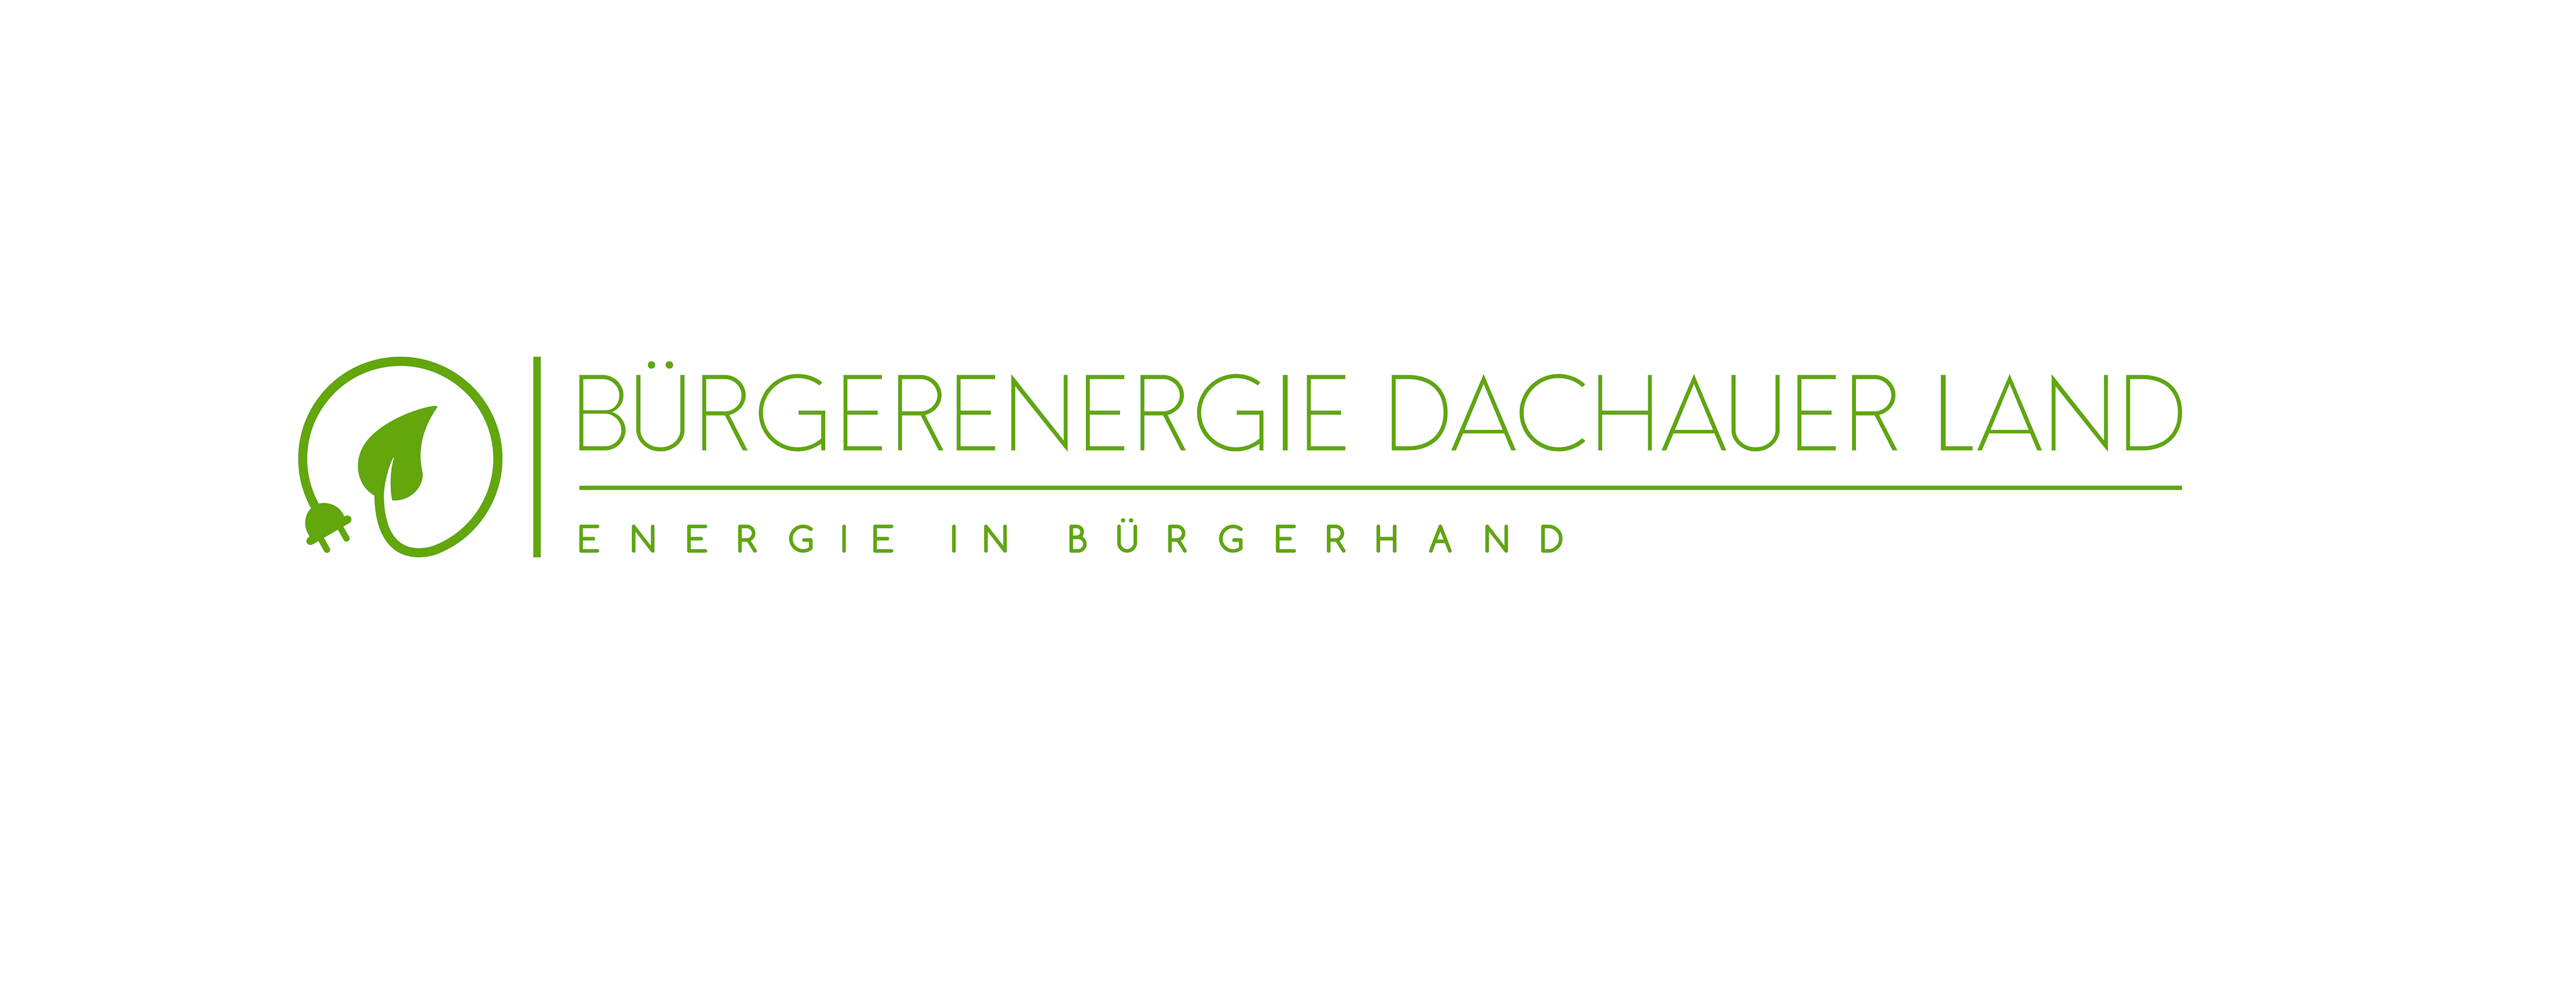 Energie in Bürgerhand - die Bürgerenergie Dachauer Land